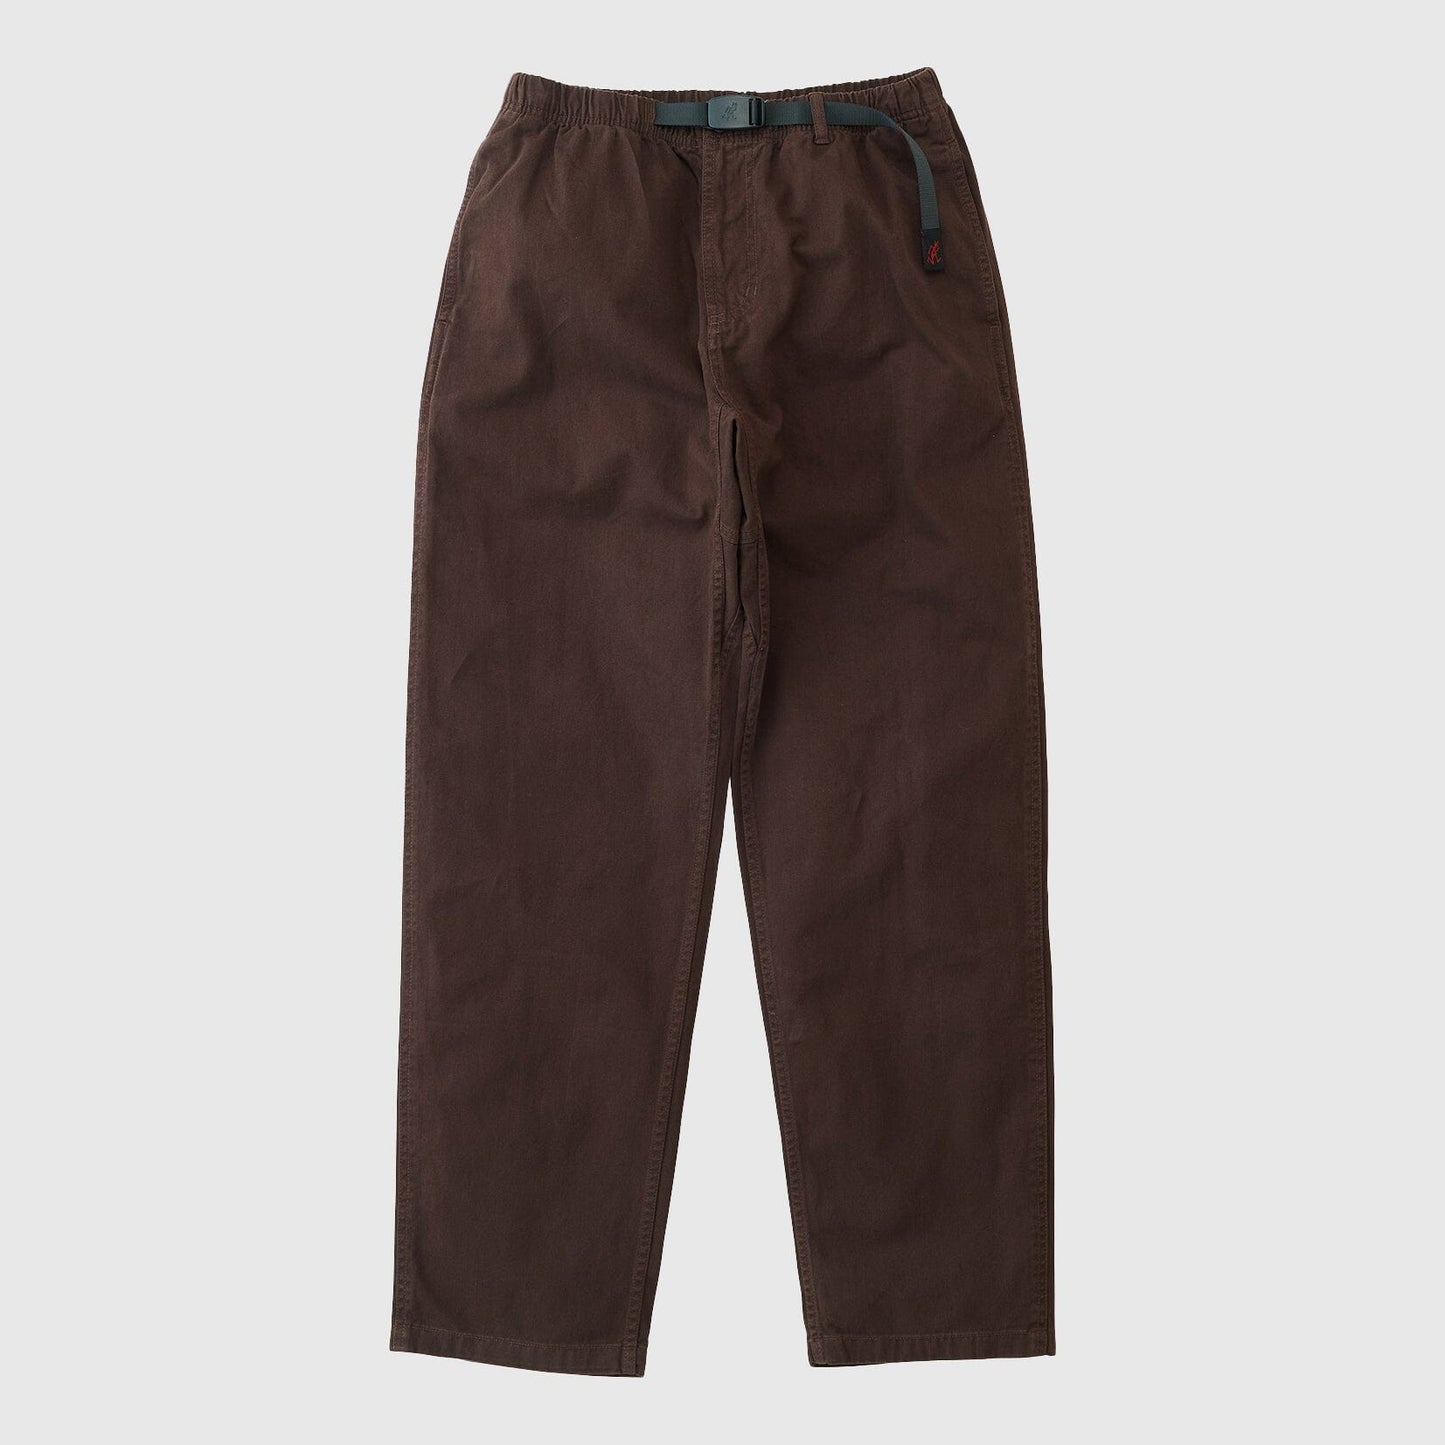 Gramicci Pants - Dark Brown Pants Gramicci 